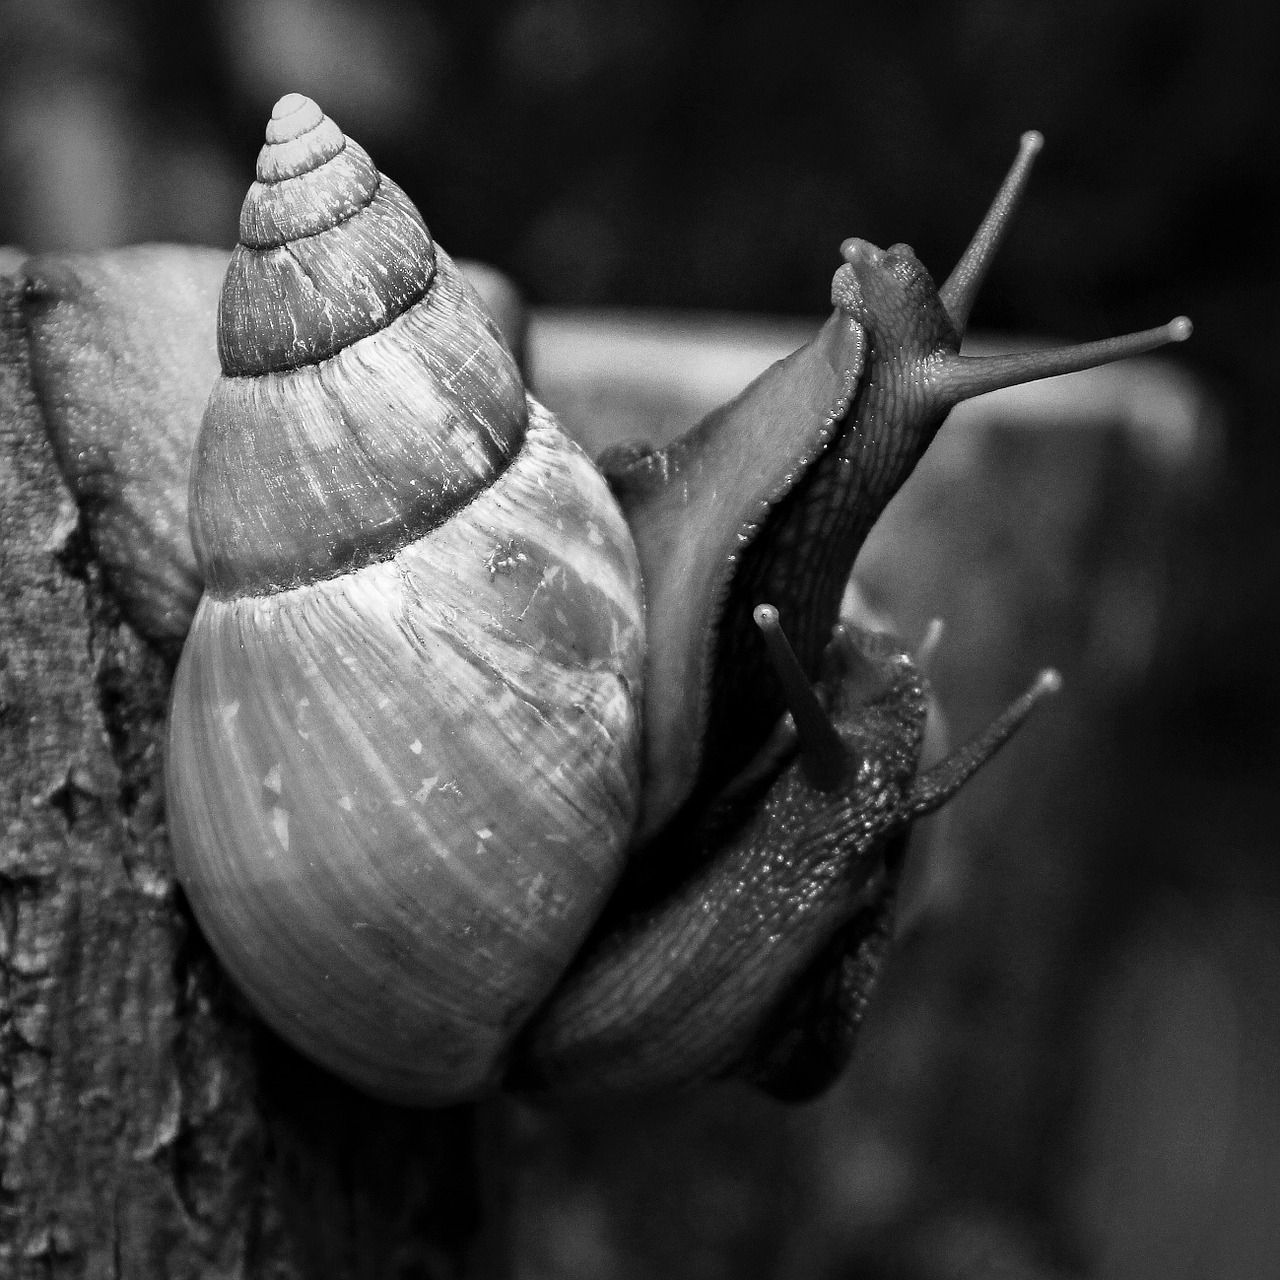 snails-612943_1280